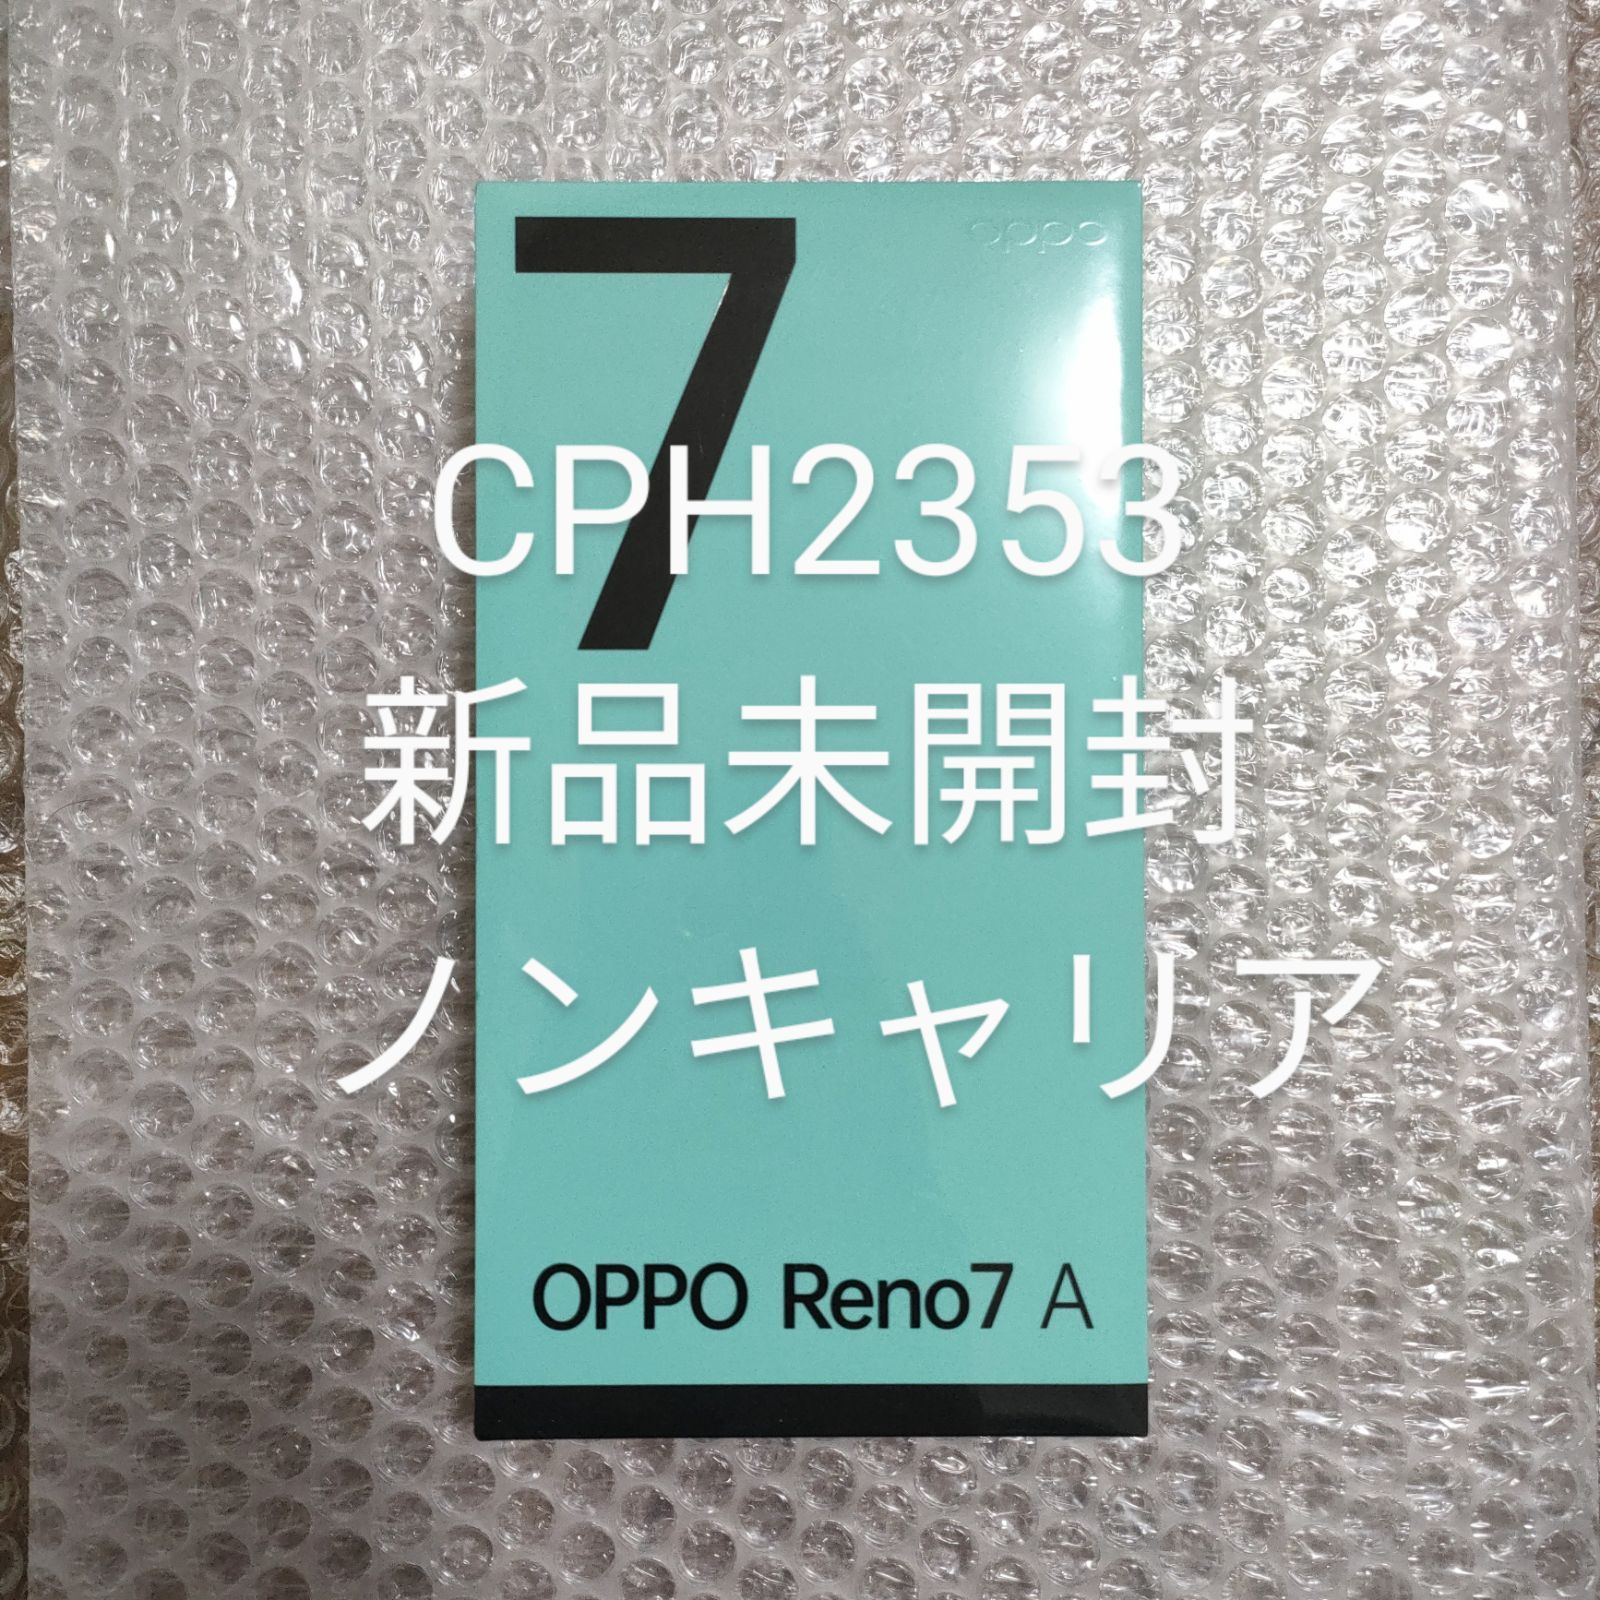 超特価美品 【新品・未使用】OPPO Reno7A スターリーブラック CPH2353